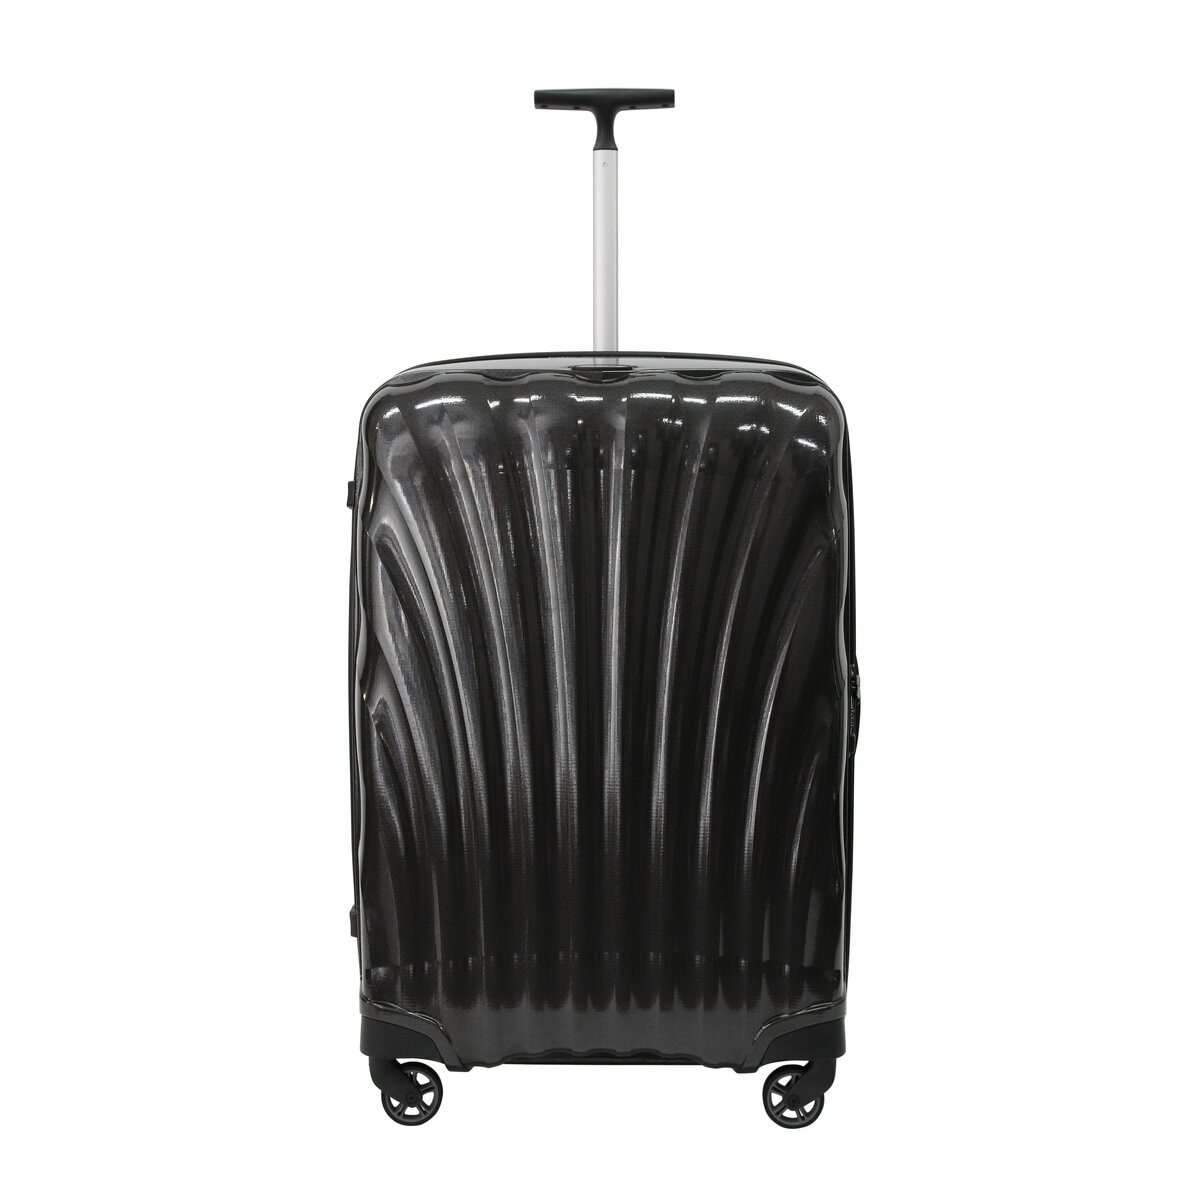 サムソナイト スーツケース コスモライト 3.0 75cm  73351